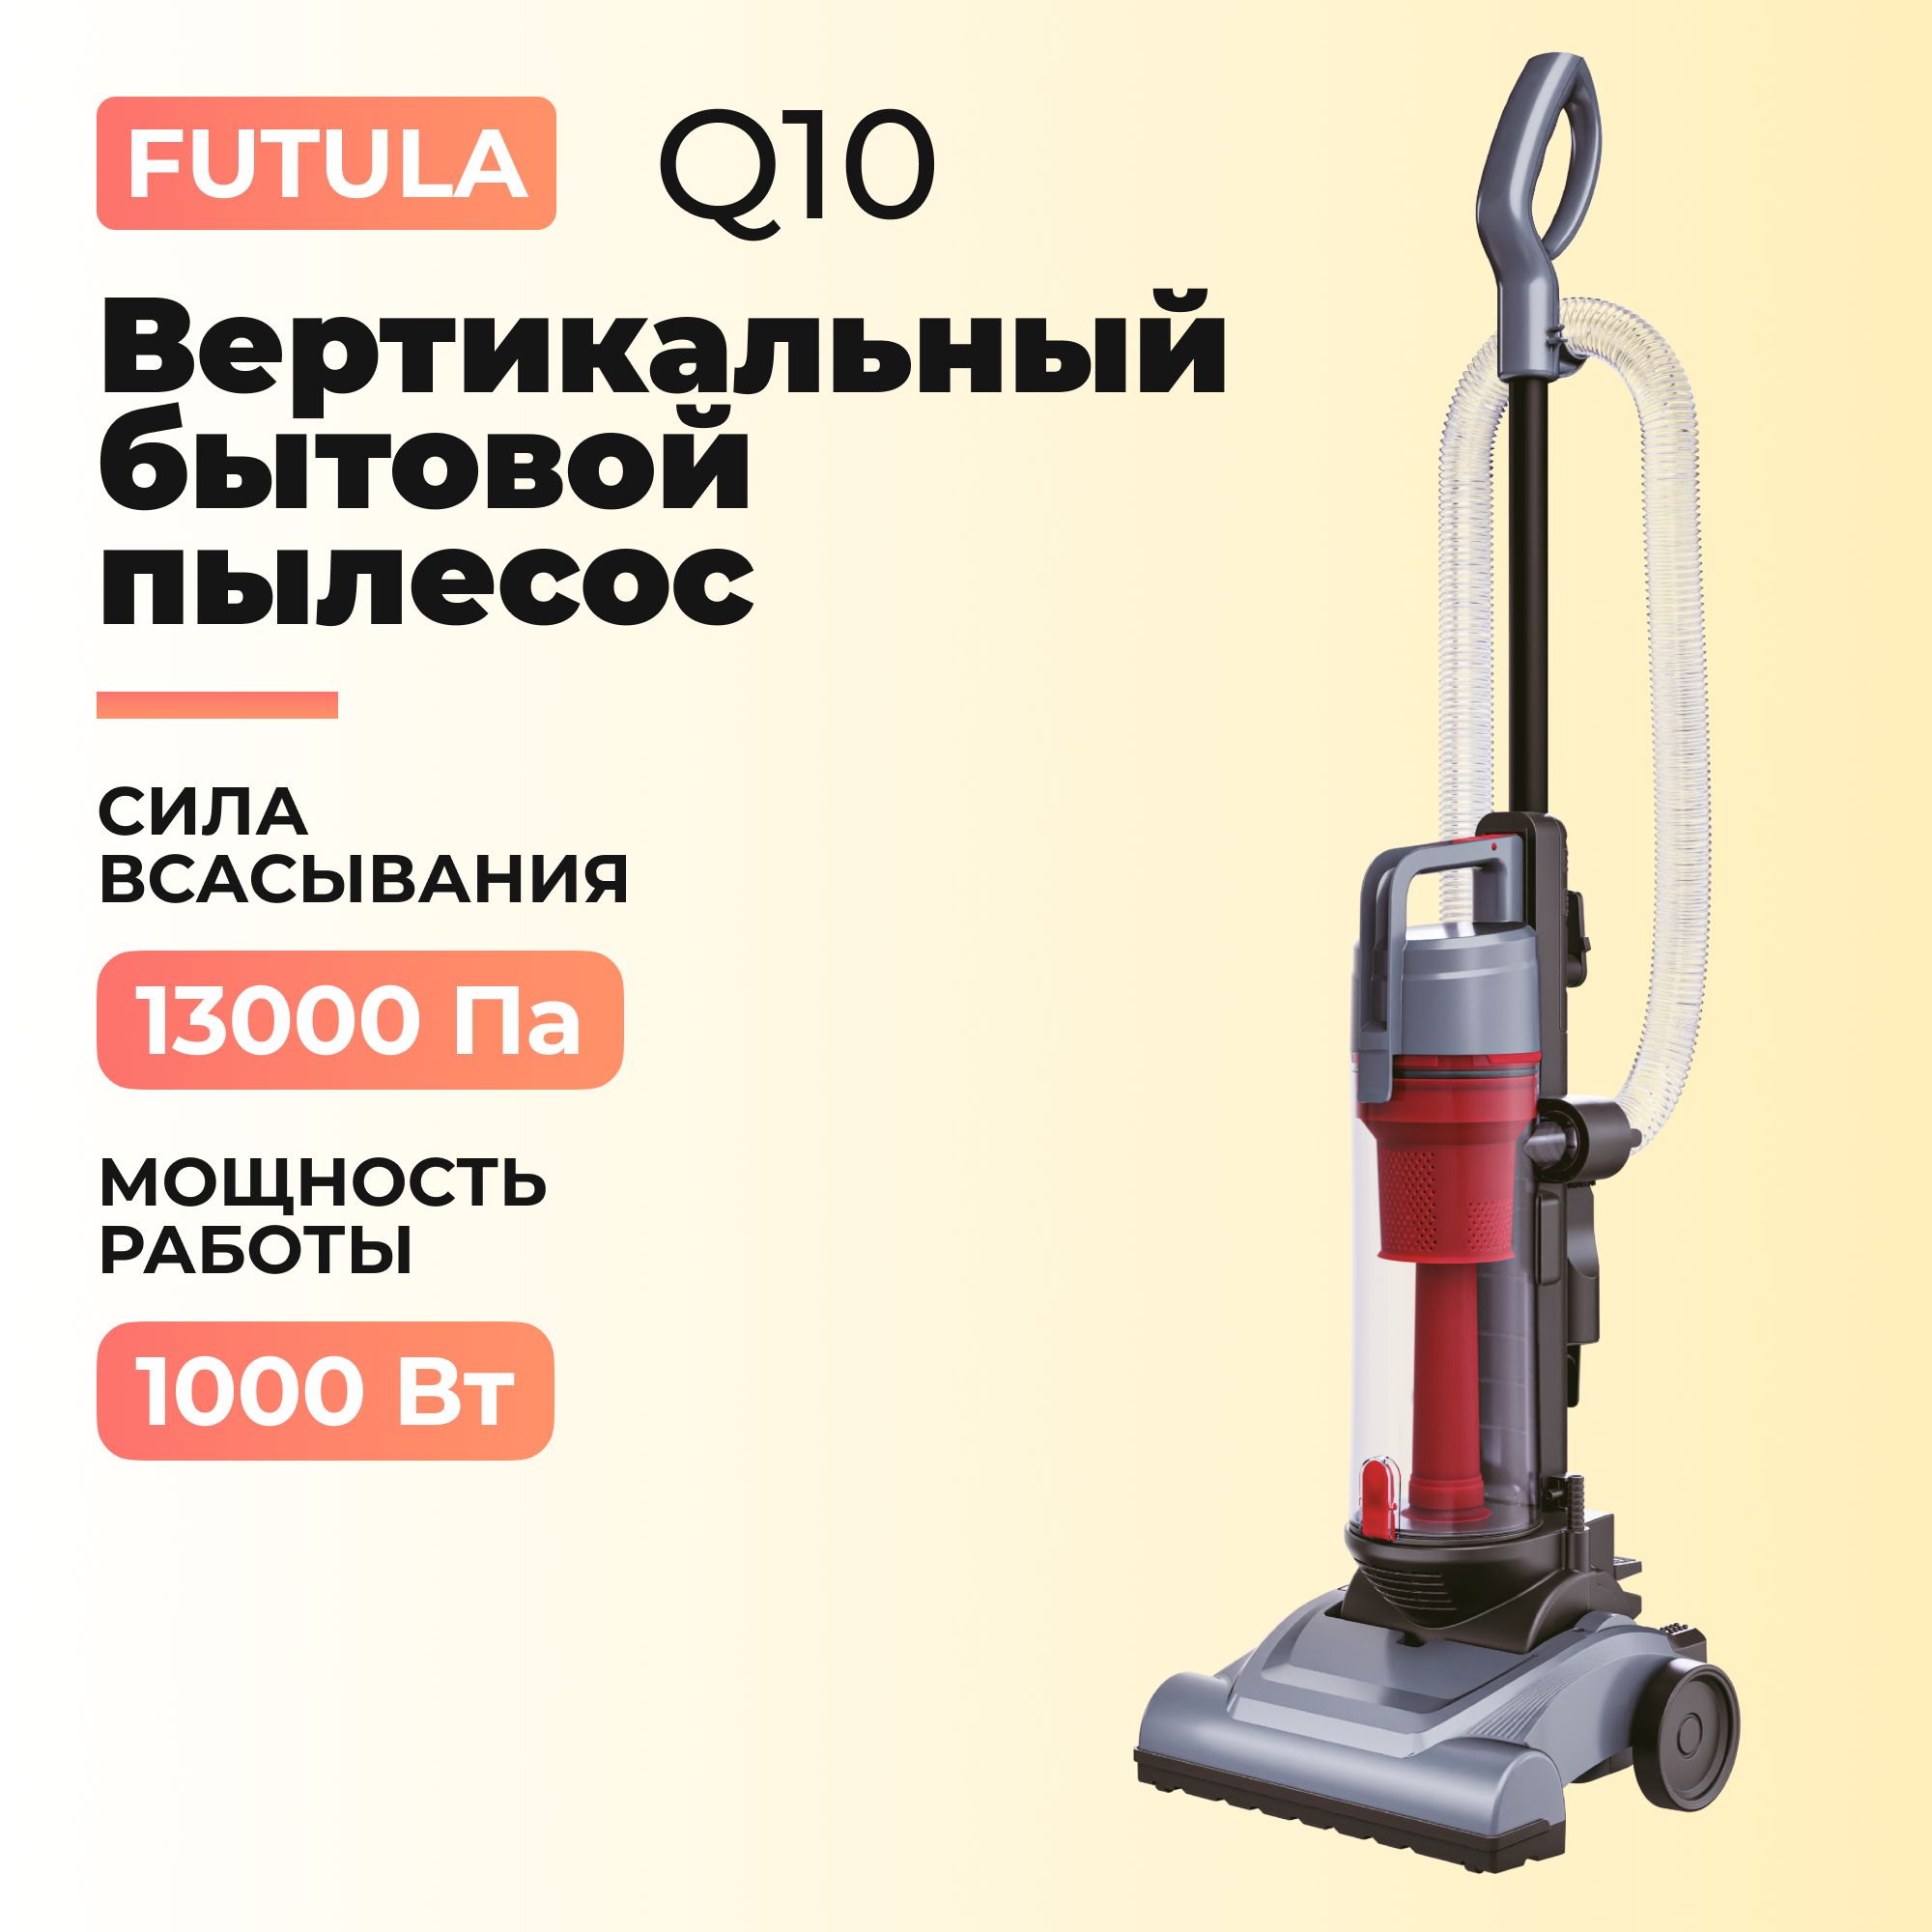 Futula vacuum cleaner q10